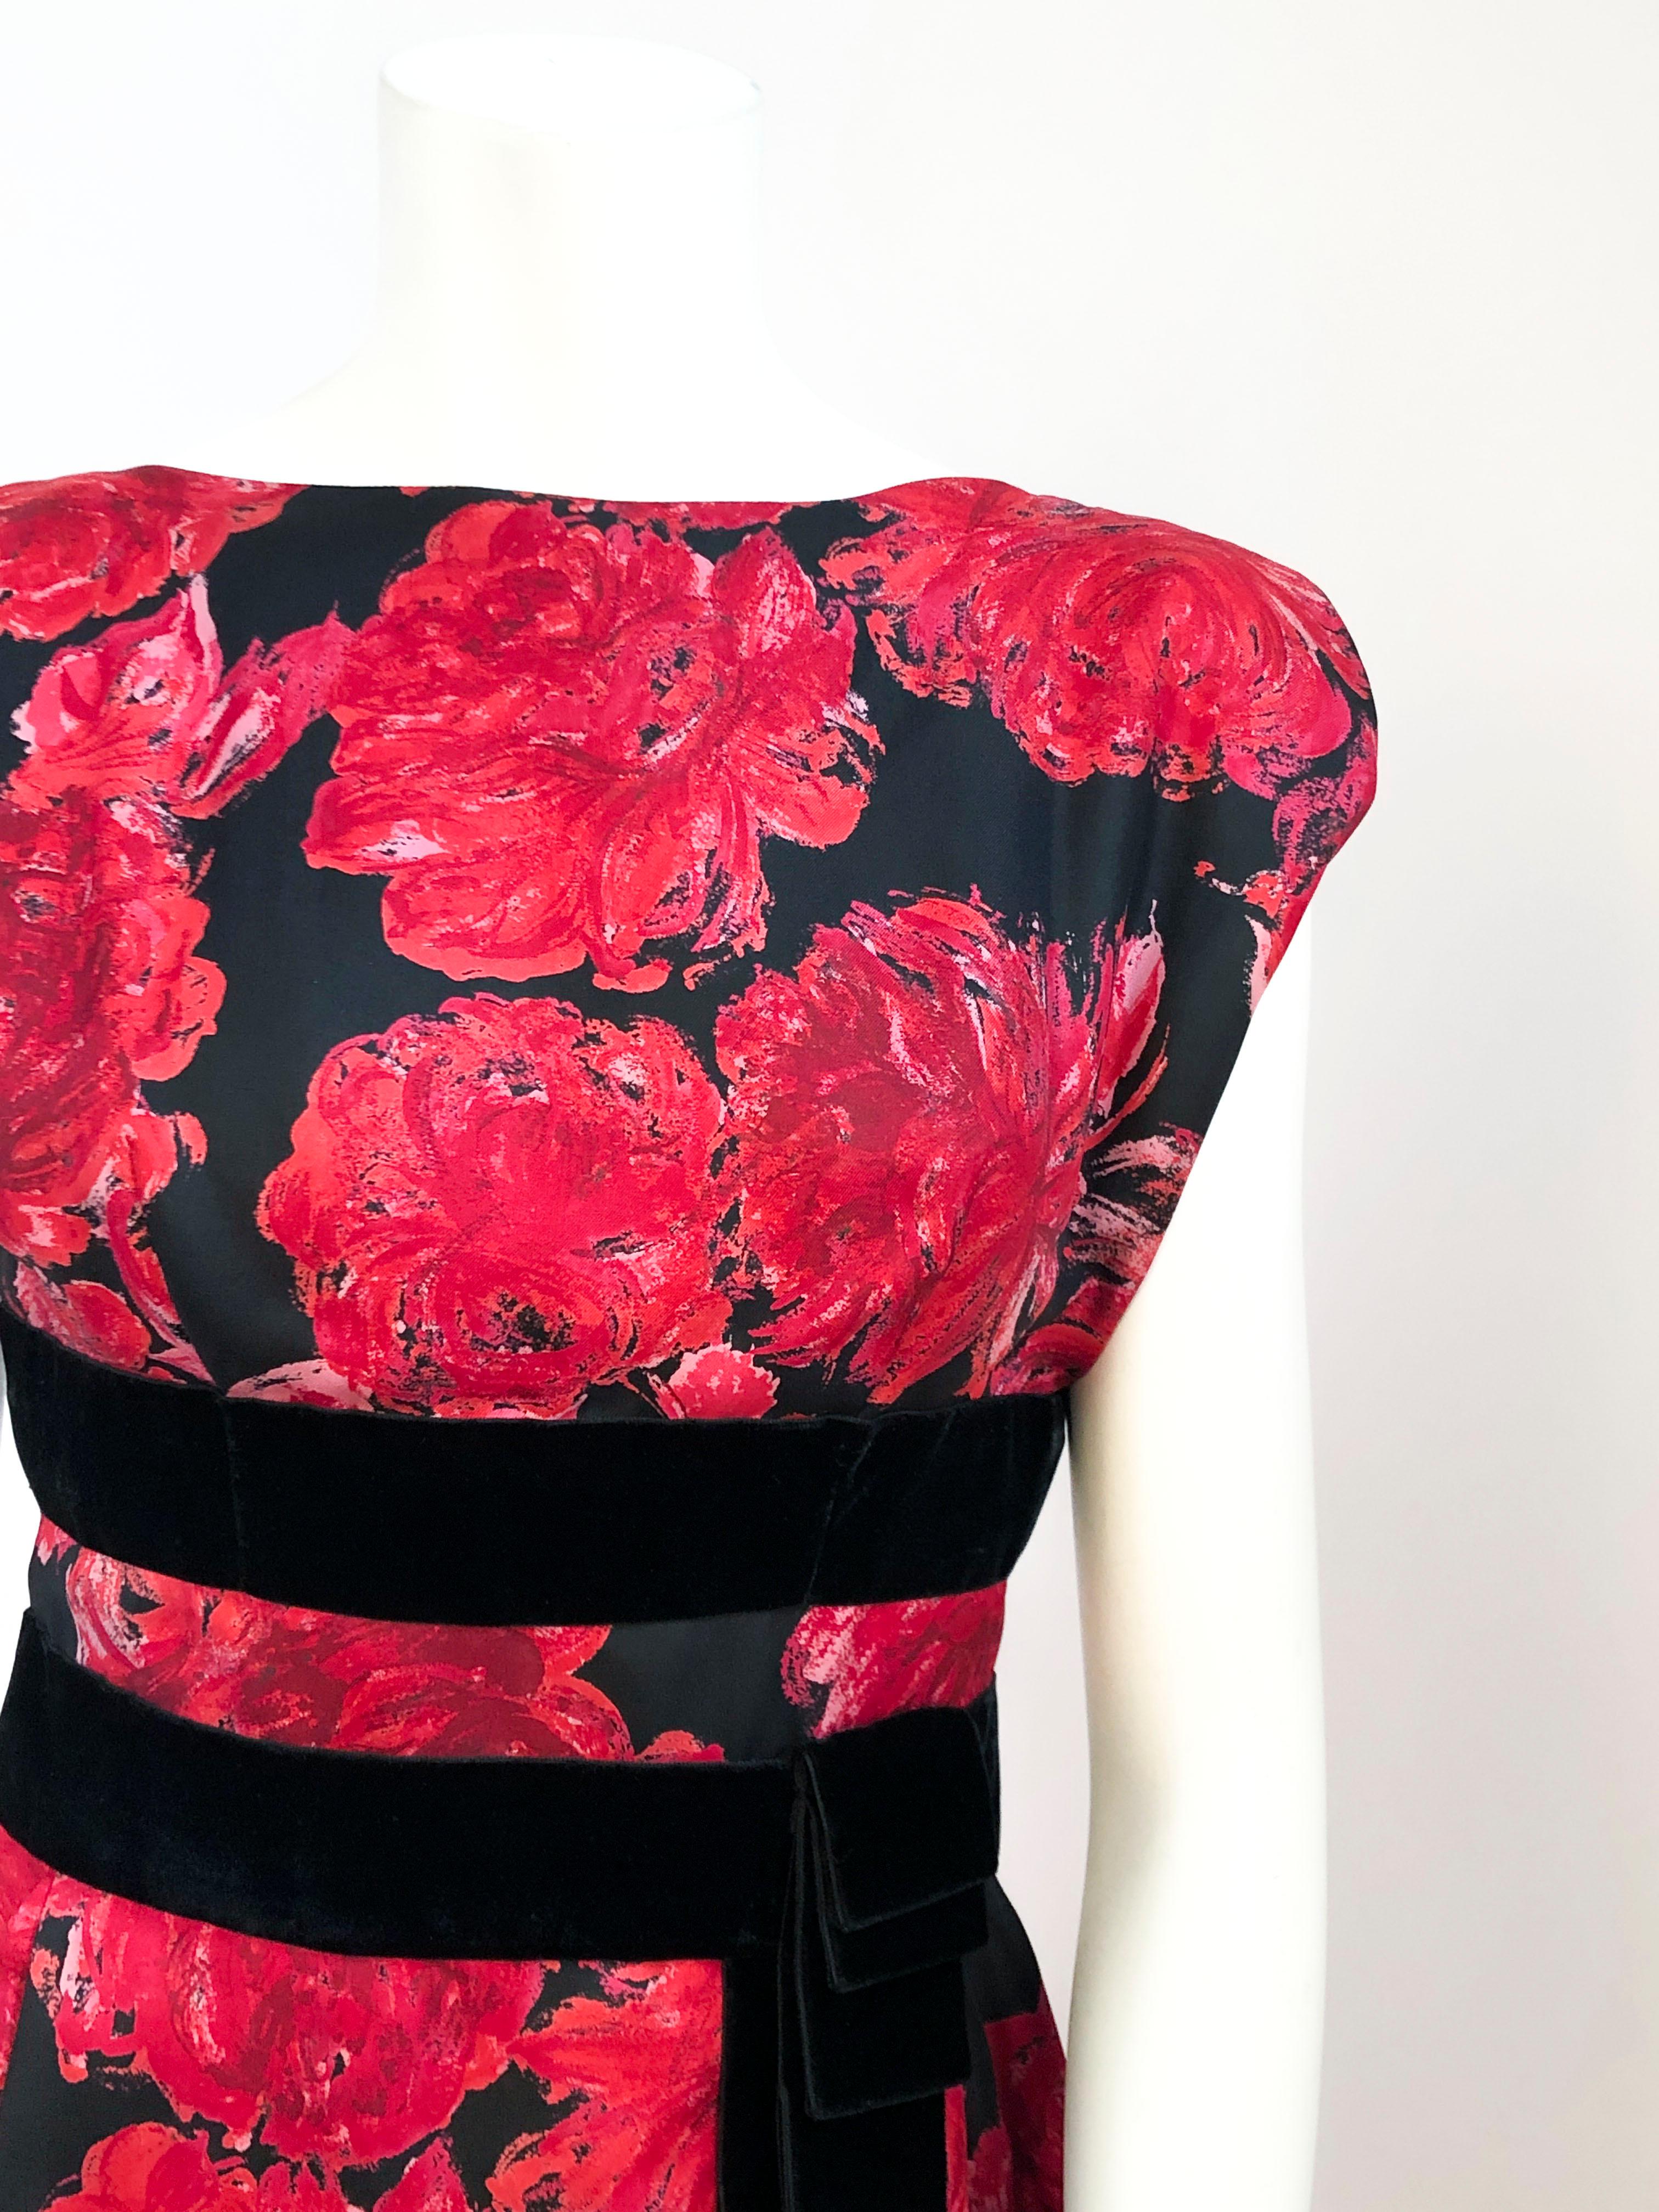 Robe en soie avec un imprimé floral impressionniste dans les tons rouges avec un avant-corps noir. La taille est extenuée par deux bandes de velours appliquées qui se terminent par un volant superposé et décoré. Elle présente un col bateau sur le